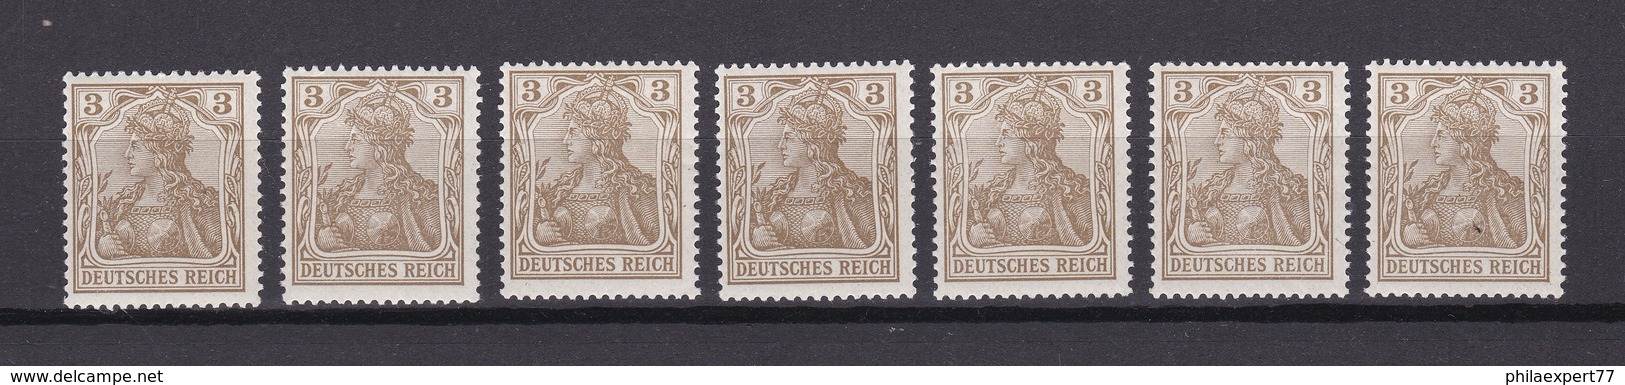 Deutsches Reich - 1902 - Michel Nr. 69 - Postfrisch - 24 Euro - Ungebraucht